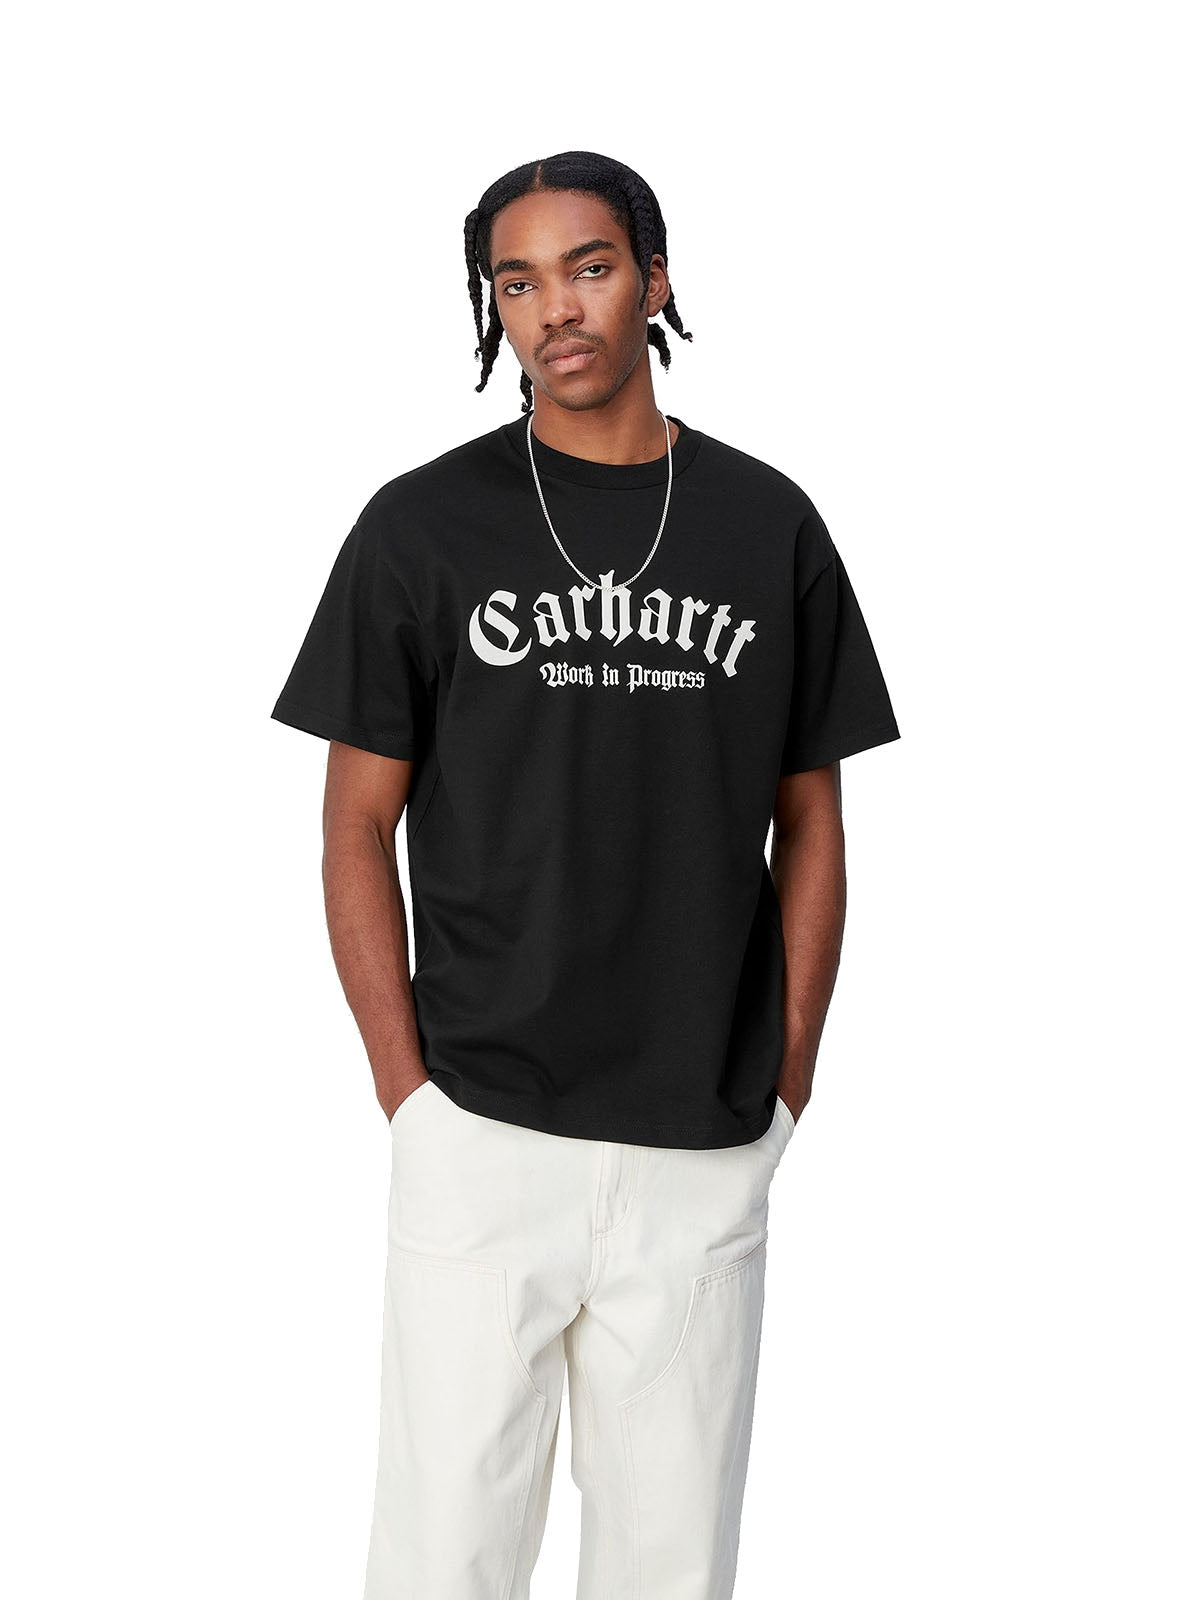 T-shirt Uomo Carhartt Wip - S/S Onyx T-Shirt - Nero